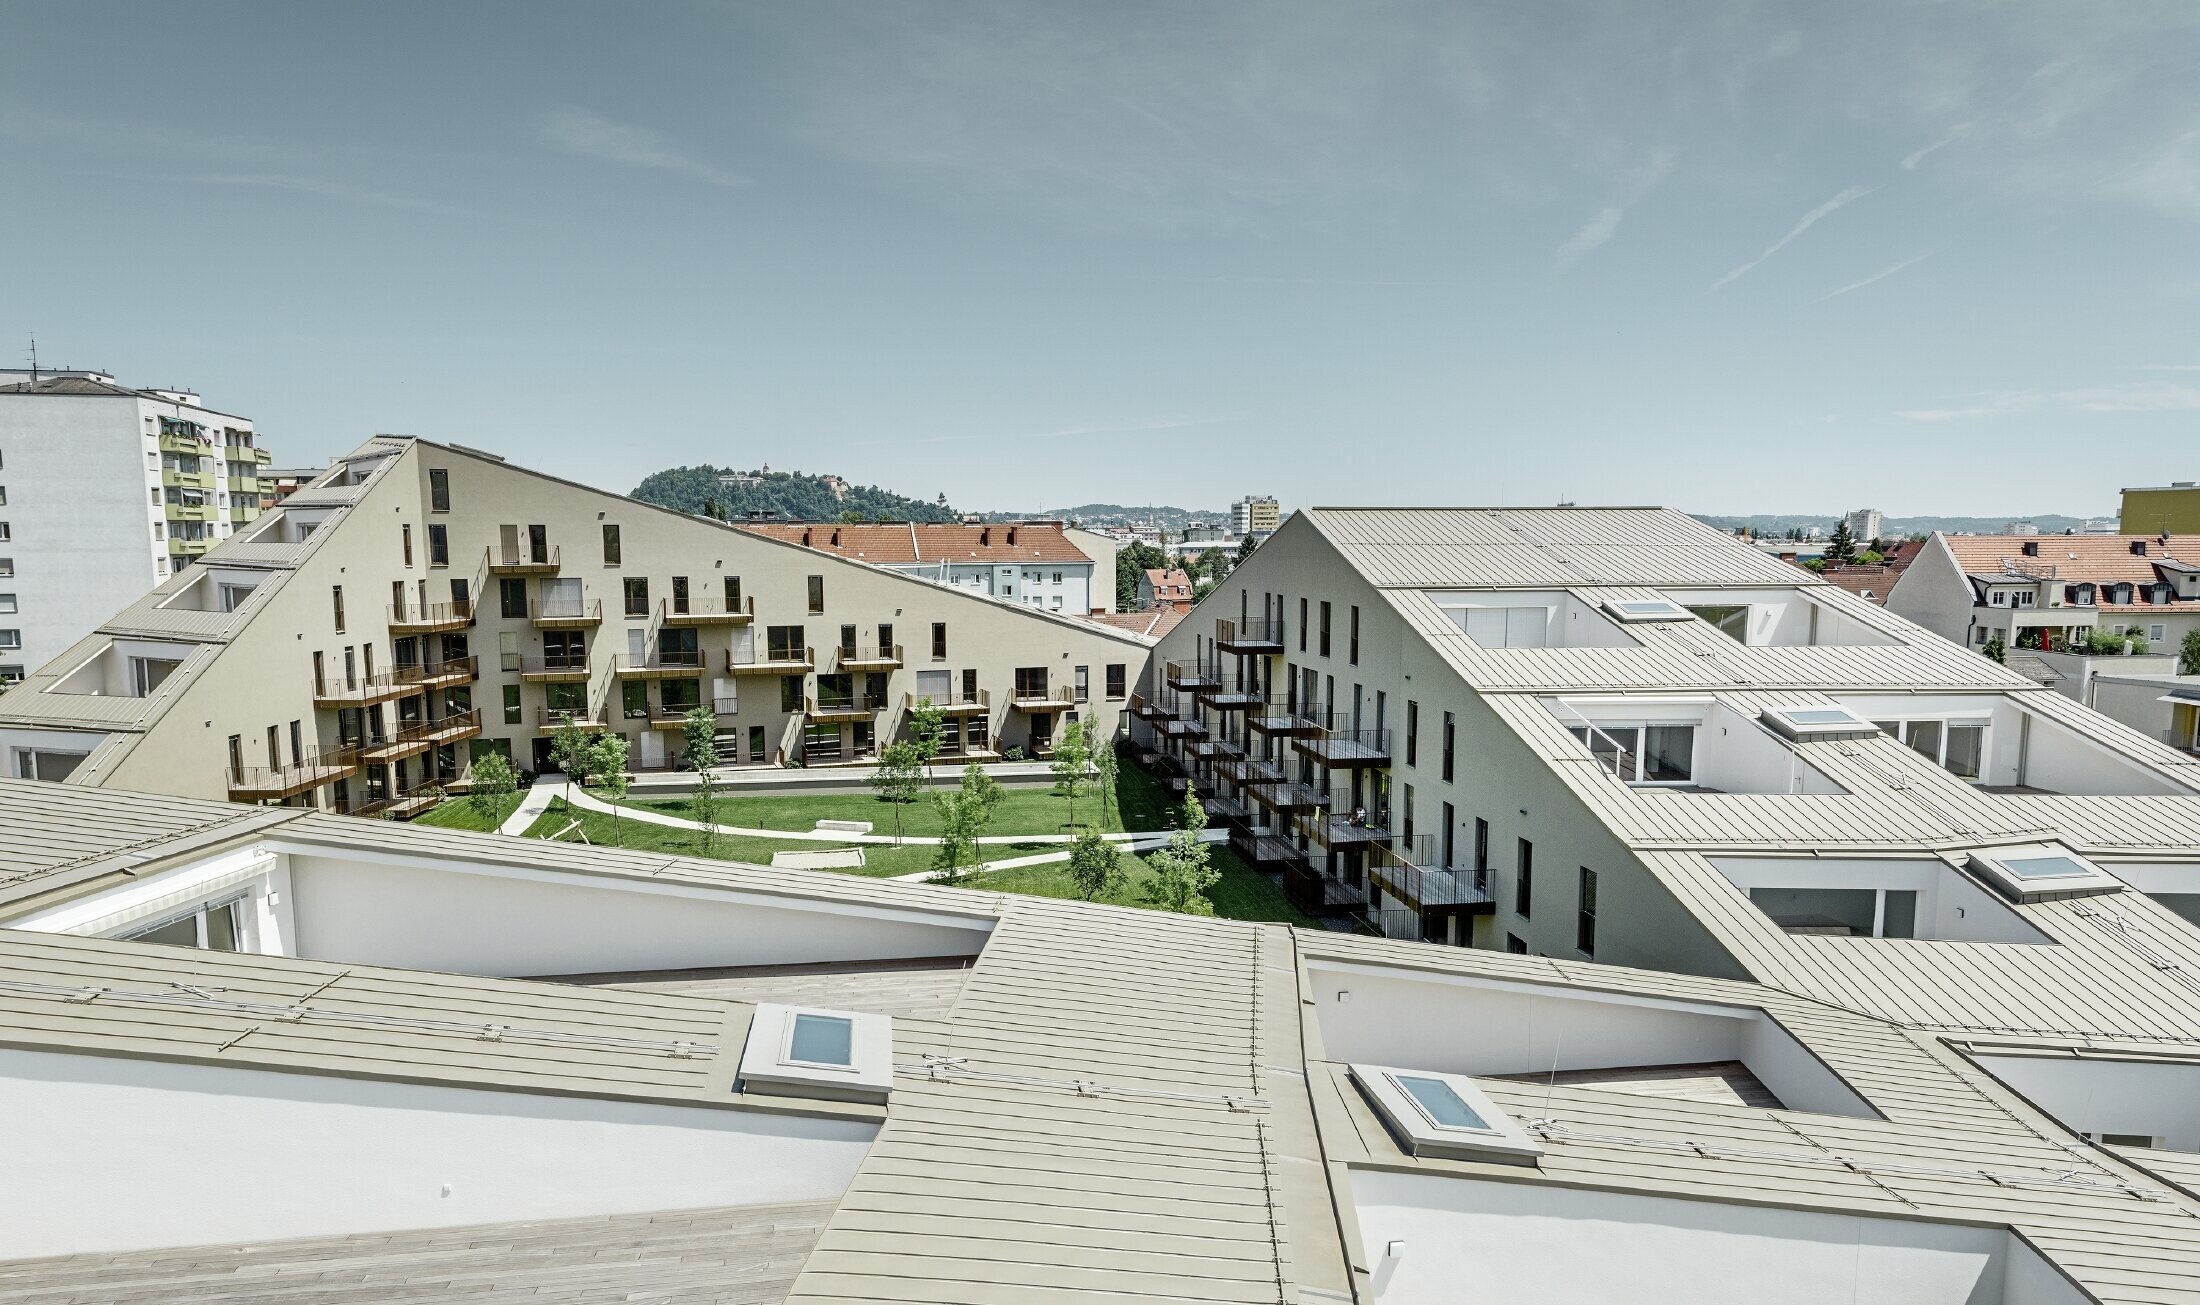 långsträckt bostadsbyggnad i Graz med plana takytor och integrerade terrasser och generösa fönster med ett prefalztak i specialfärgen bronsmetallic